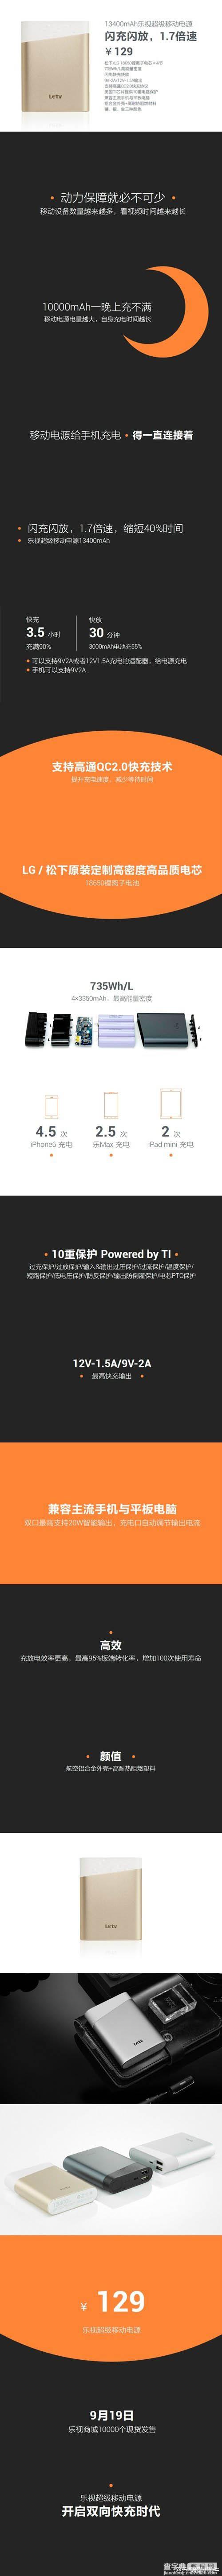 乐视13400mAh超级移动电源发布 只卖129元1